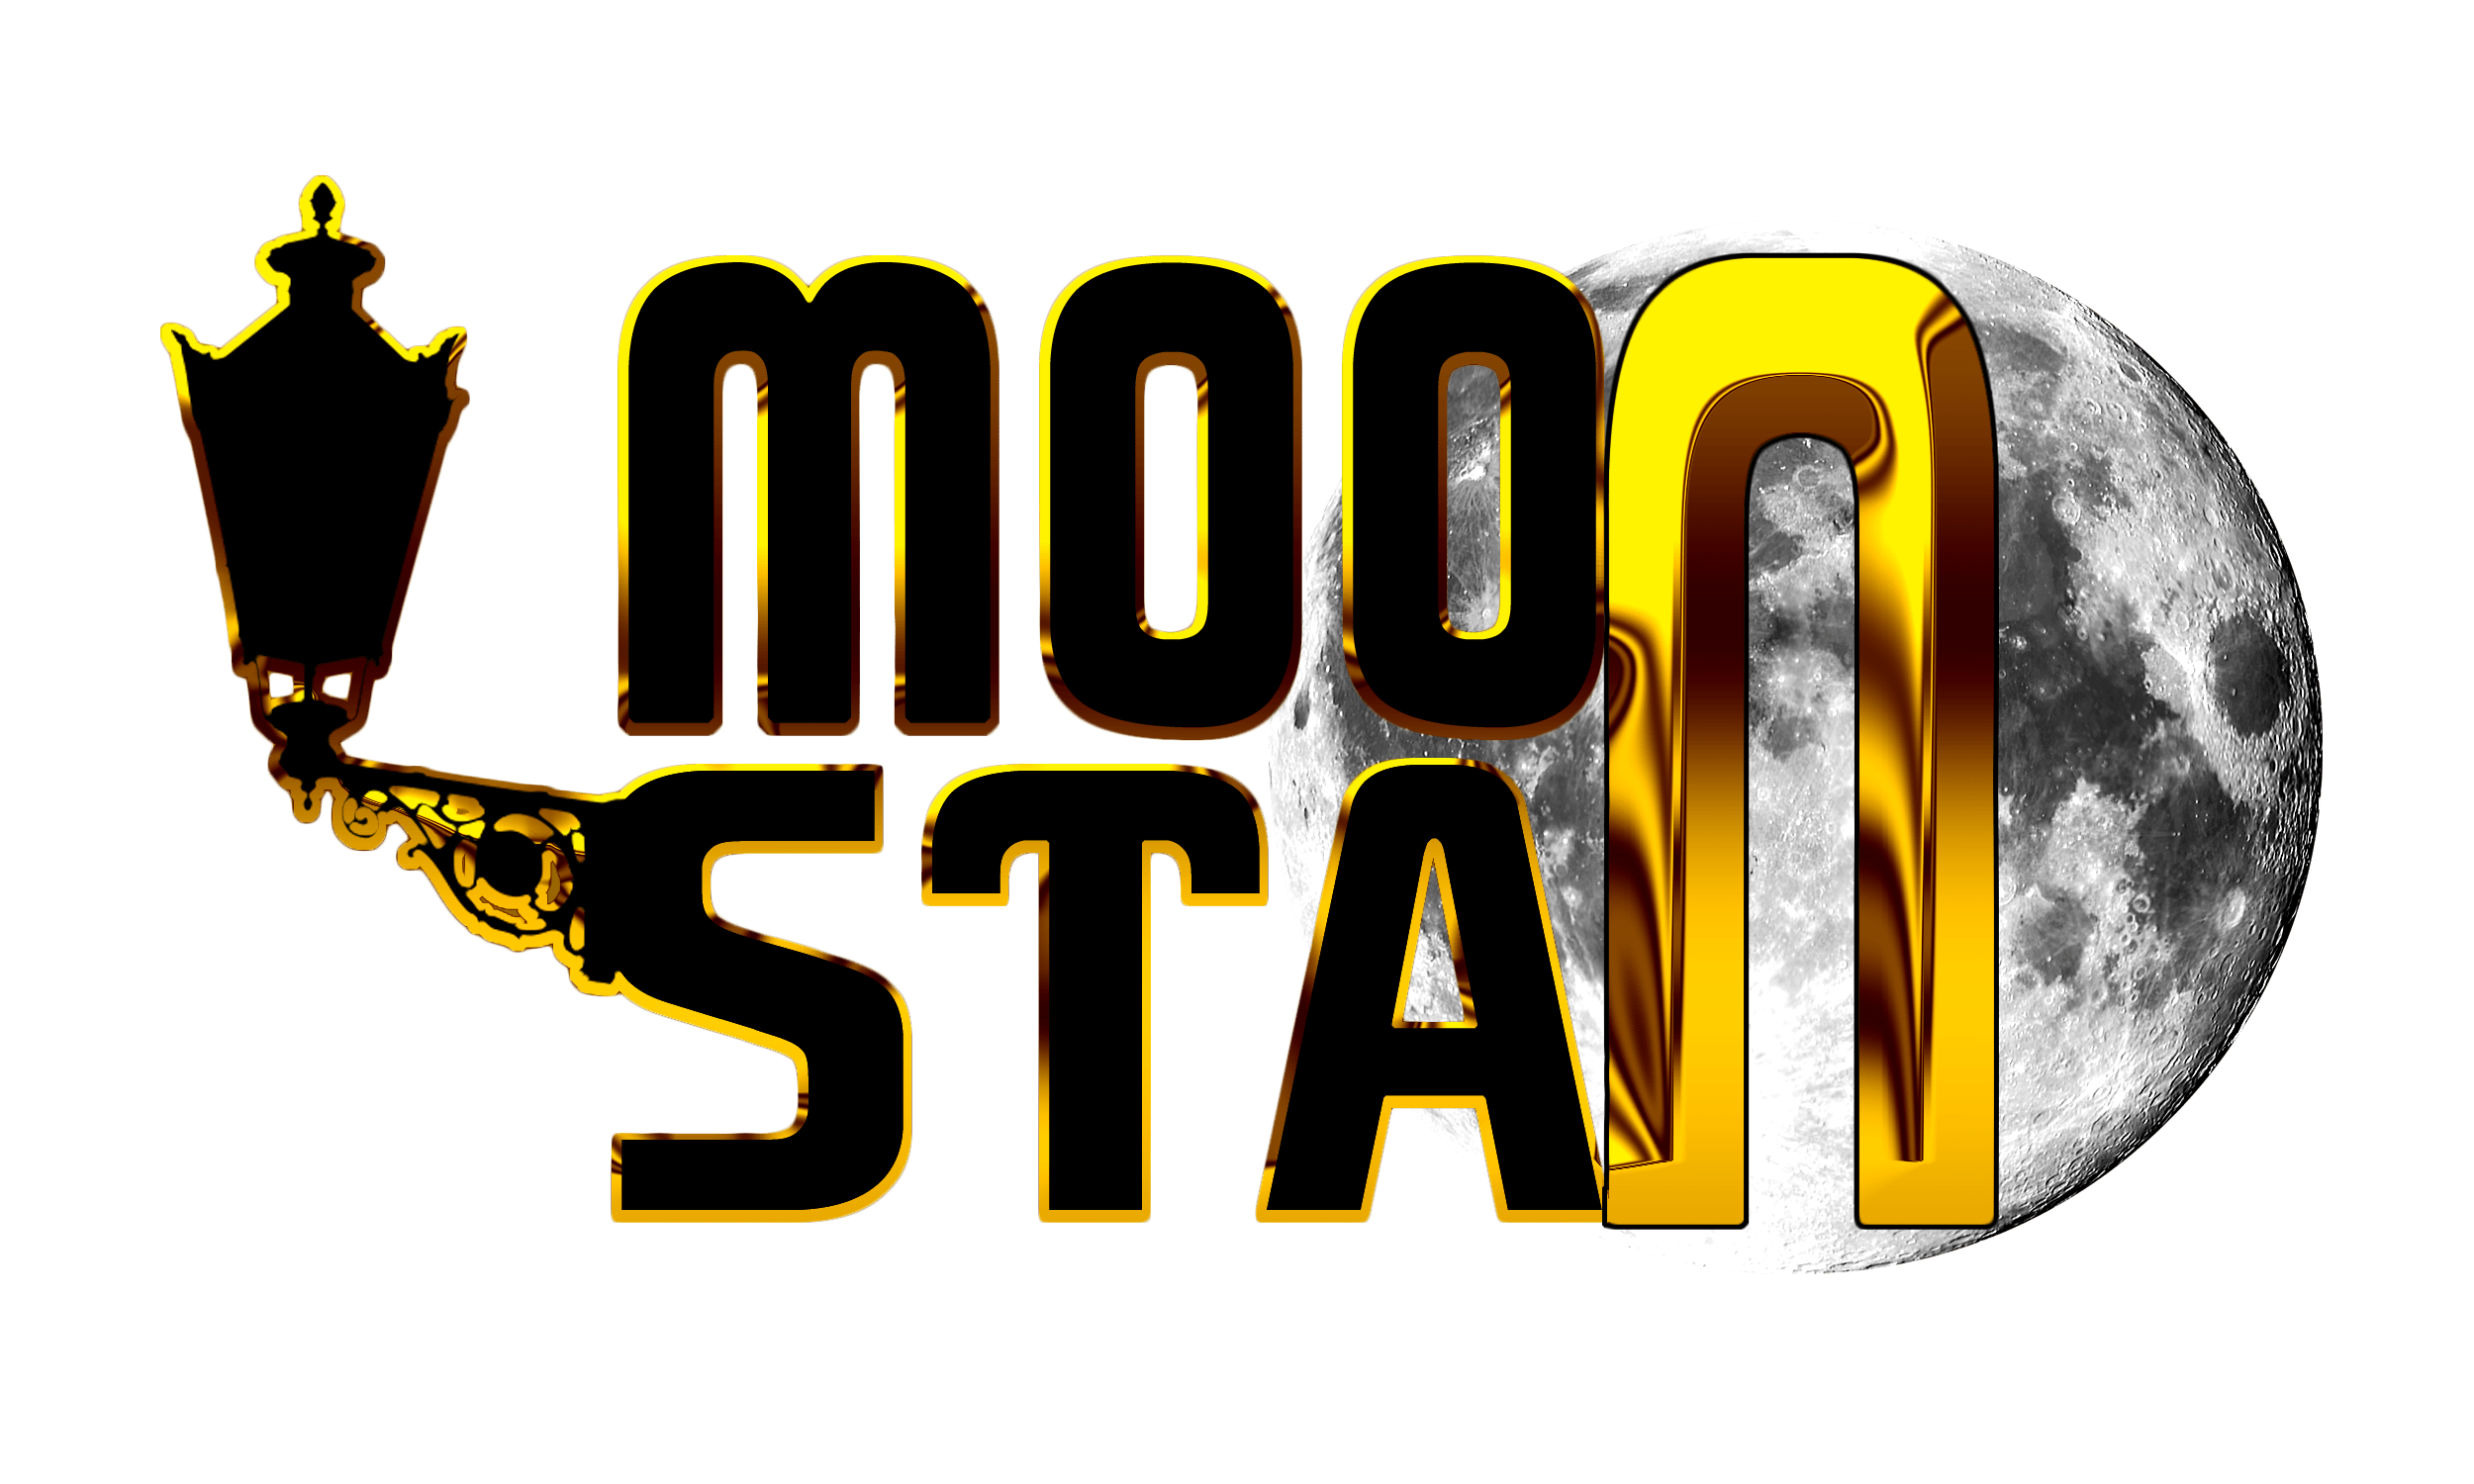 Le Moonstan